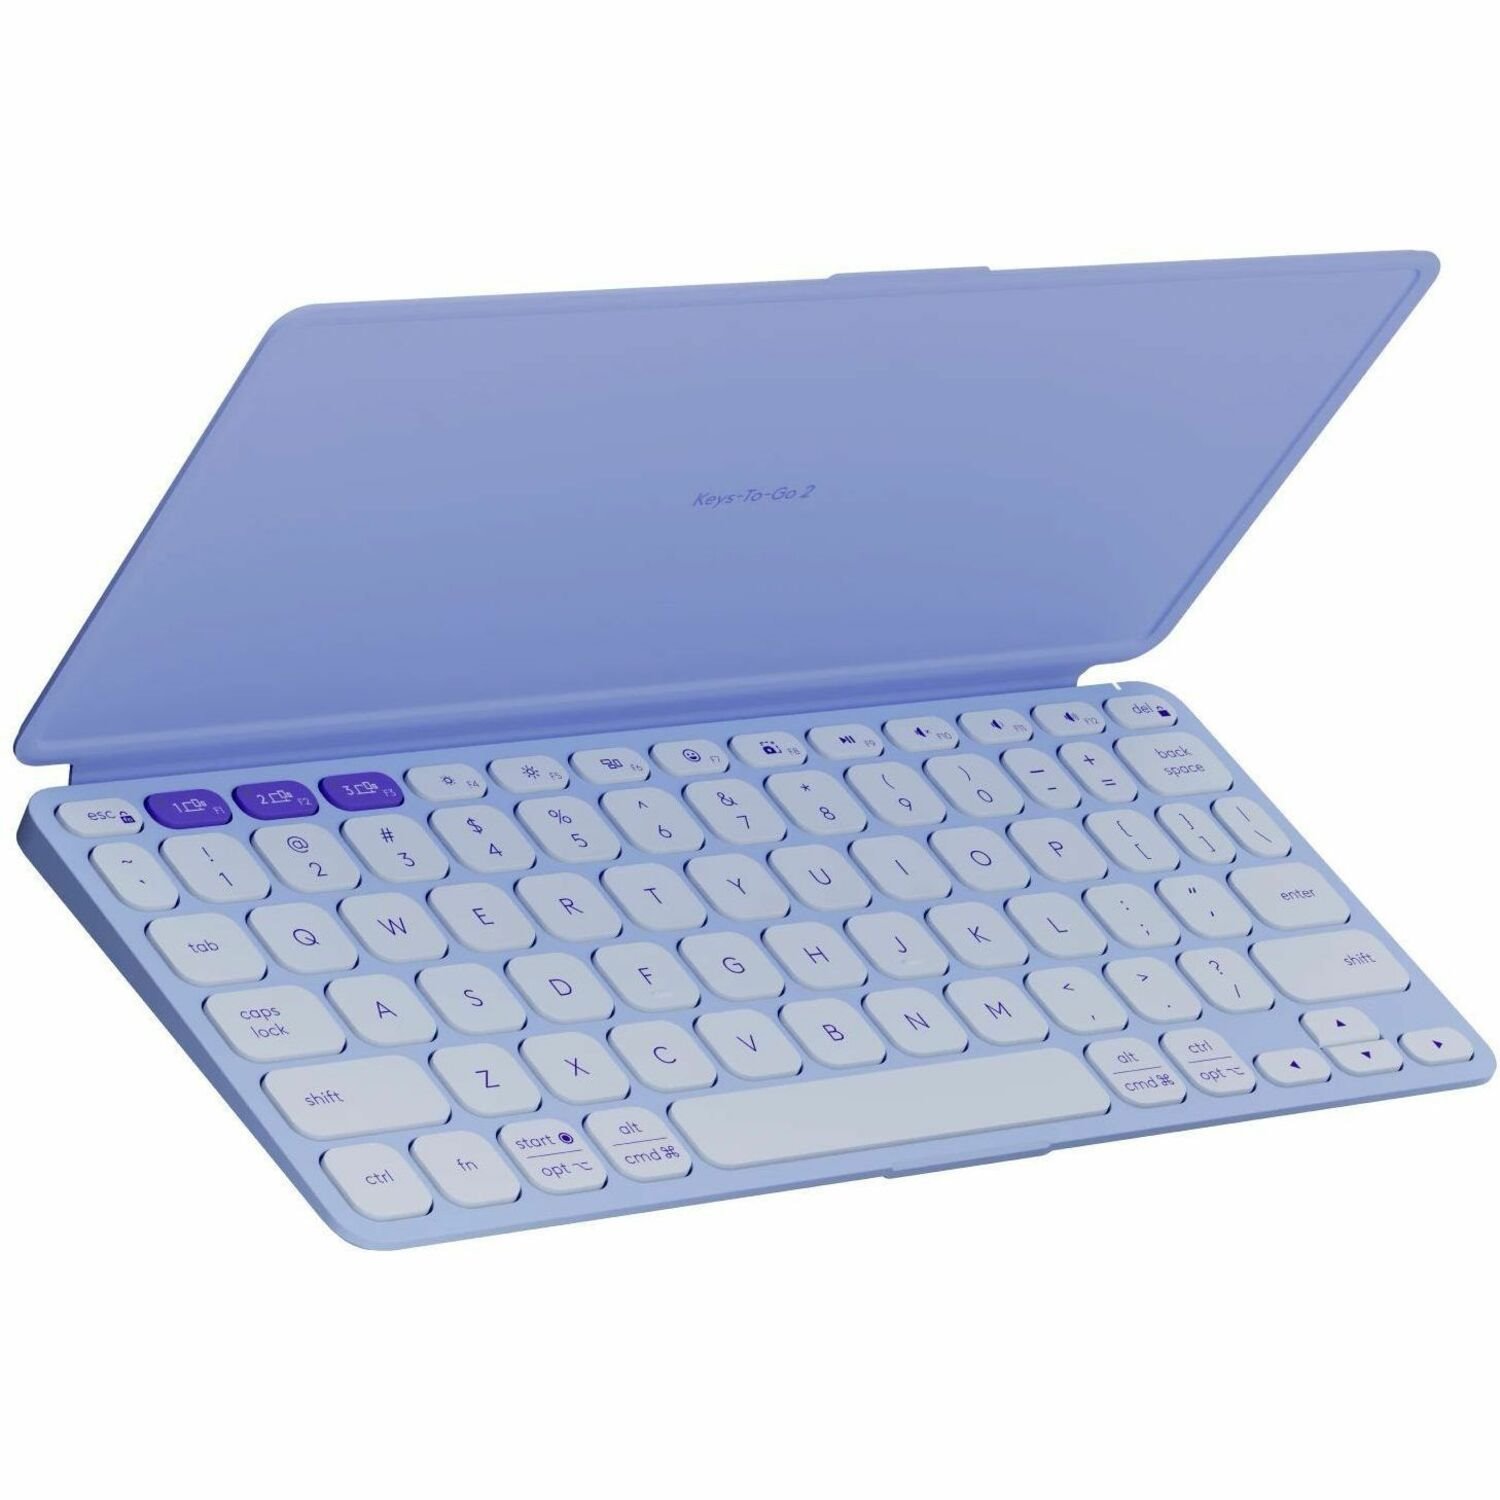 Logitech Keys-To-Go 2 Keyboard